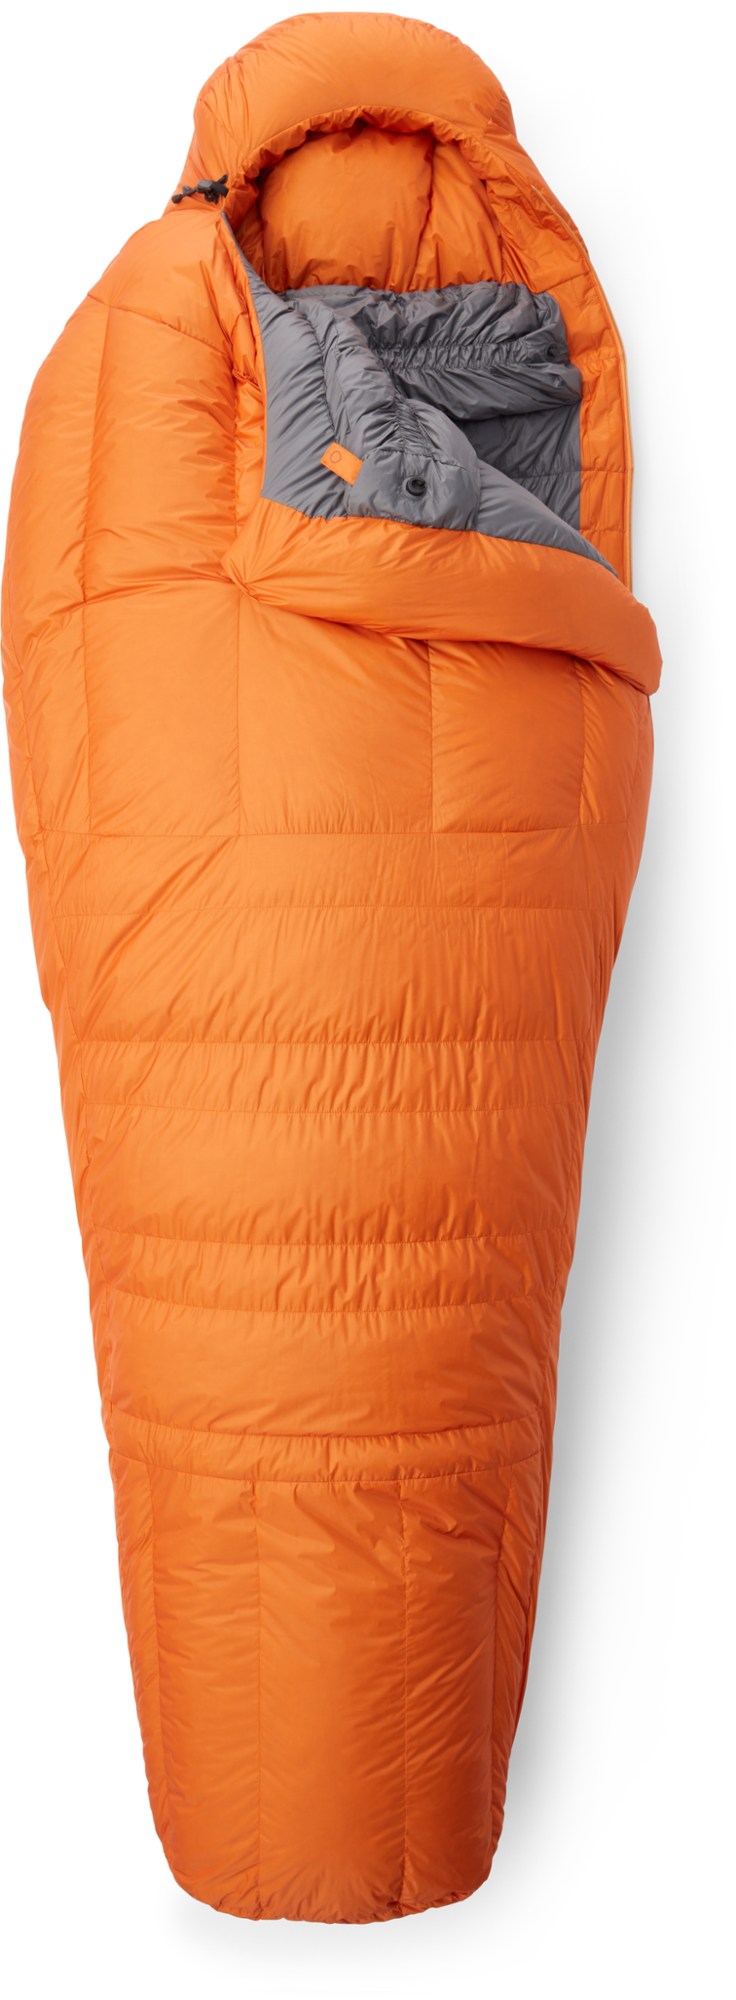 Спальный мешок Snowline Mountain Equipment, желтый спальный мешок для младенцев и детей надувная комната стильный спальный мешок для новорожденных спальный мешок для зимы